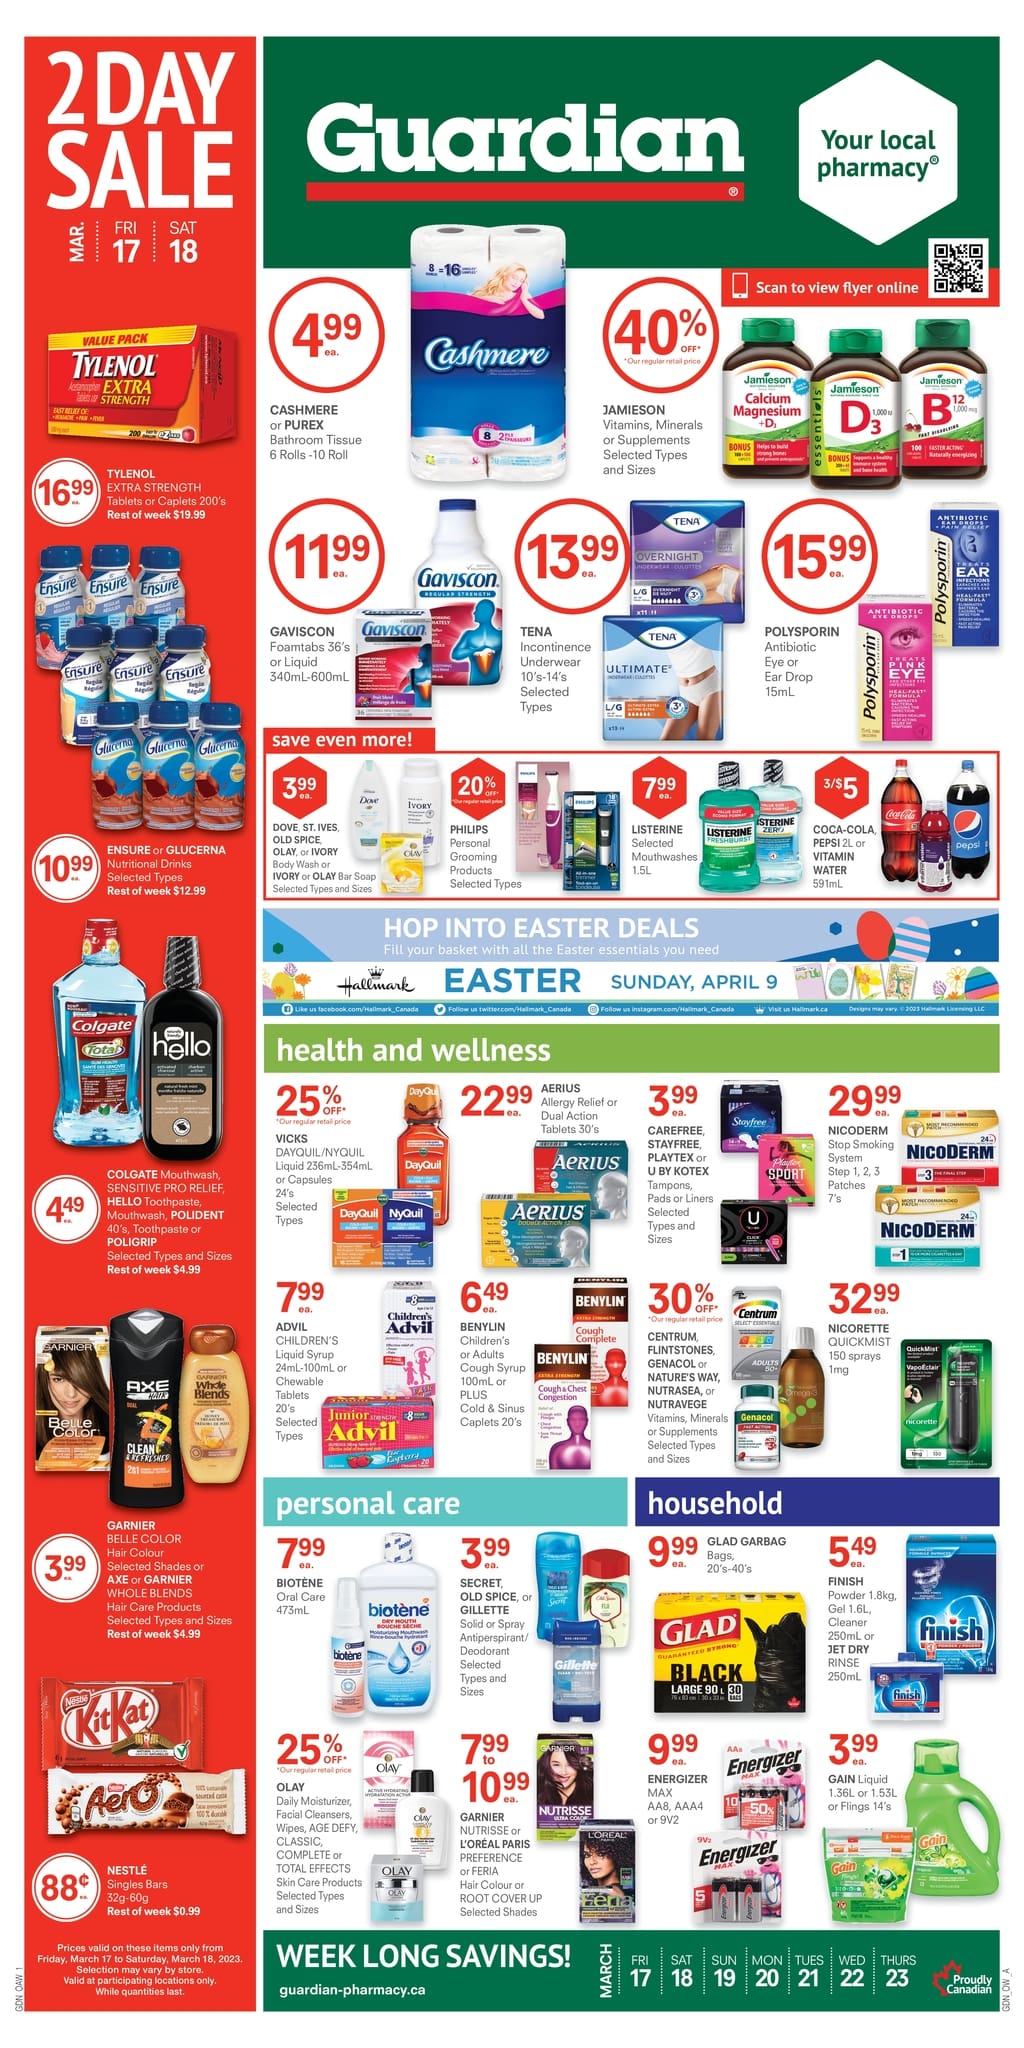 Guardian IDA Pharmacies - Weekly Flyer Specials - Page 1